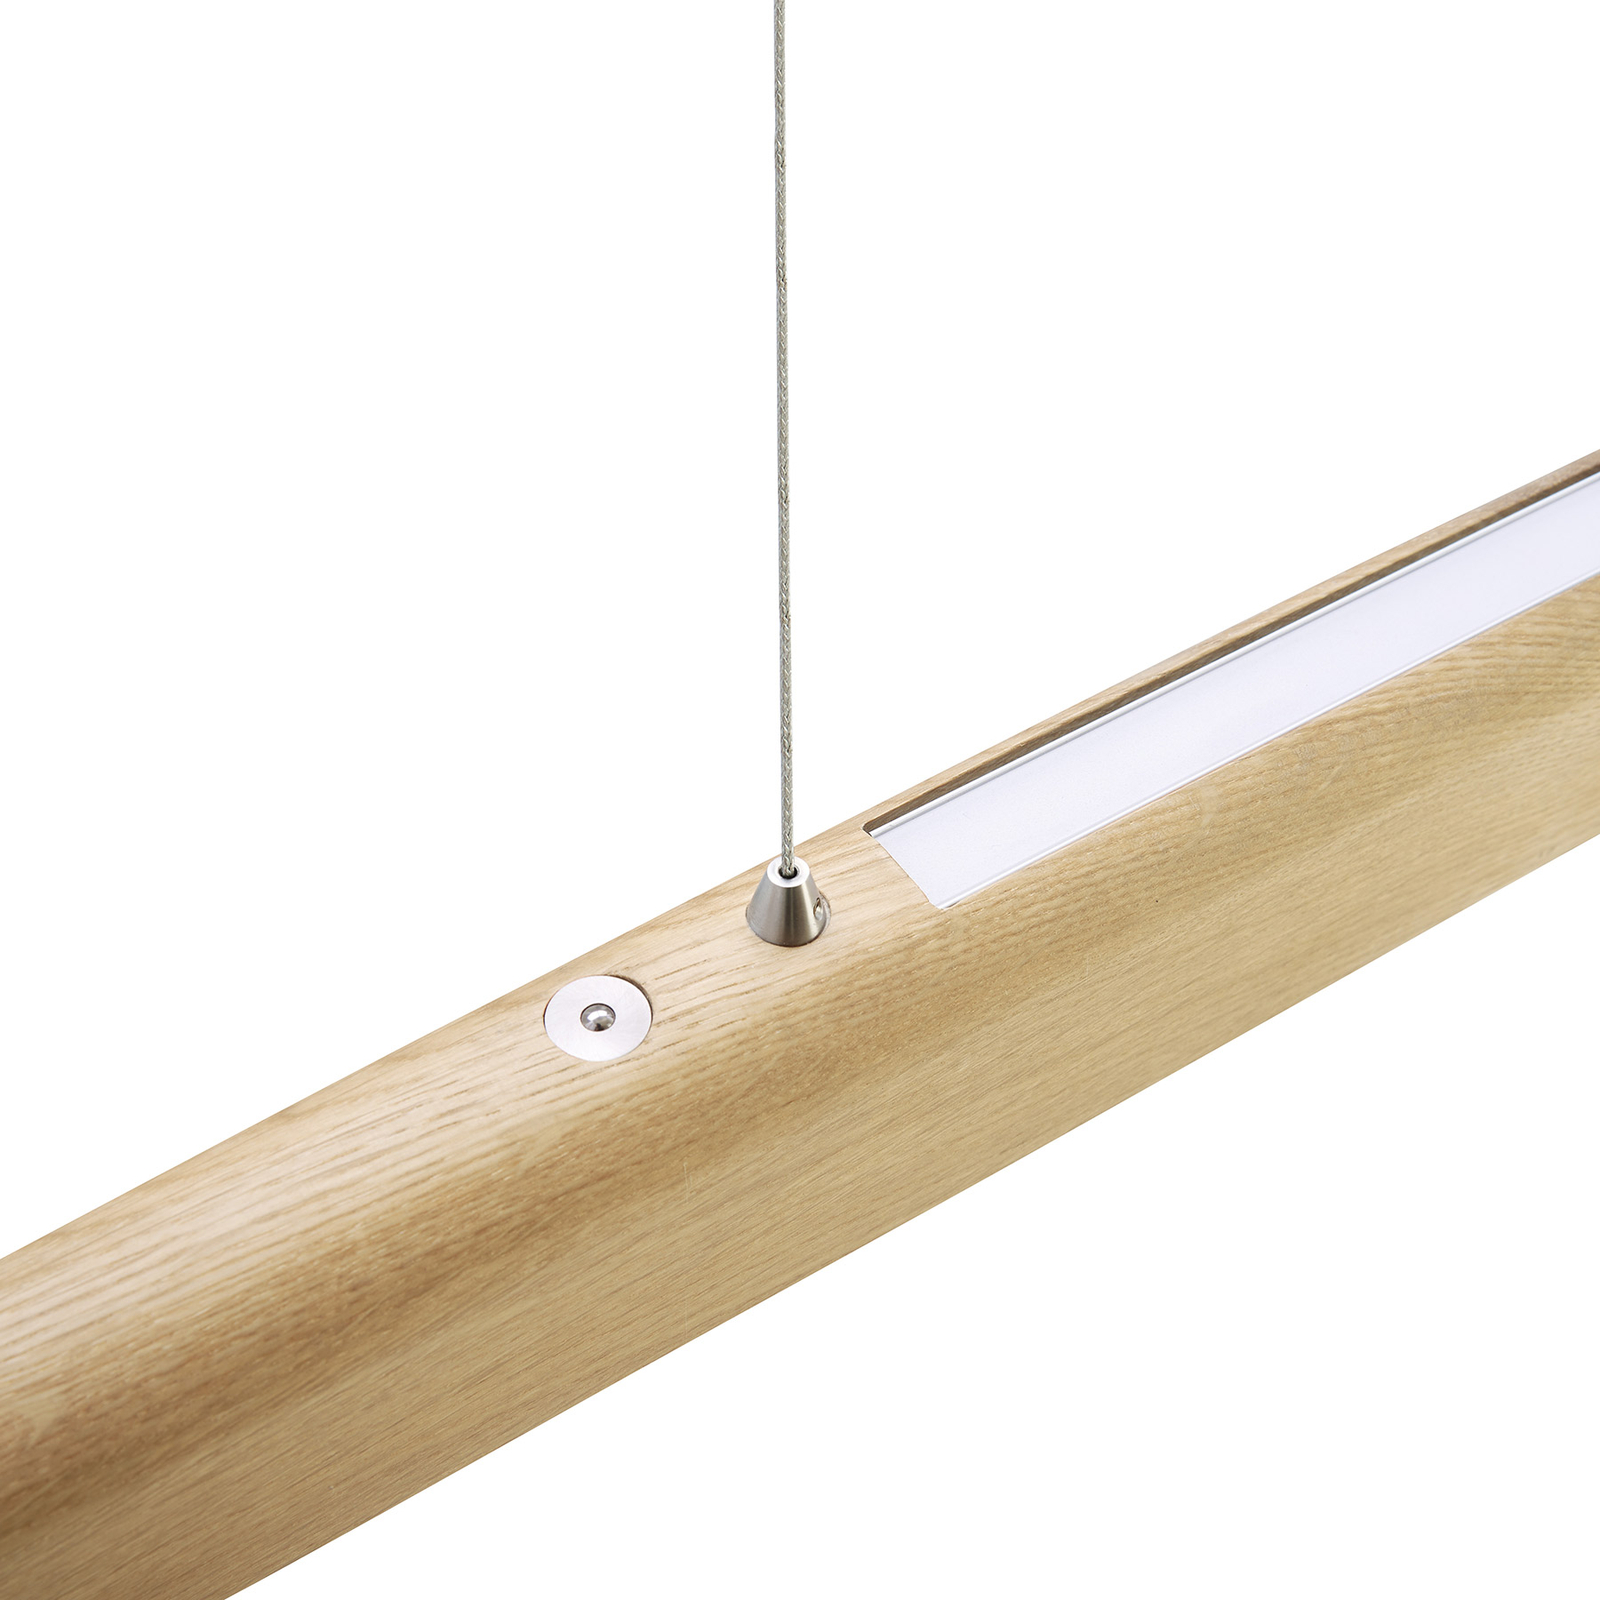 HerzBlut Arco LED-Hängelampe asteiche natur 130cm